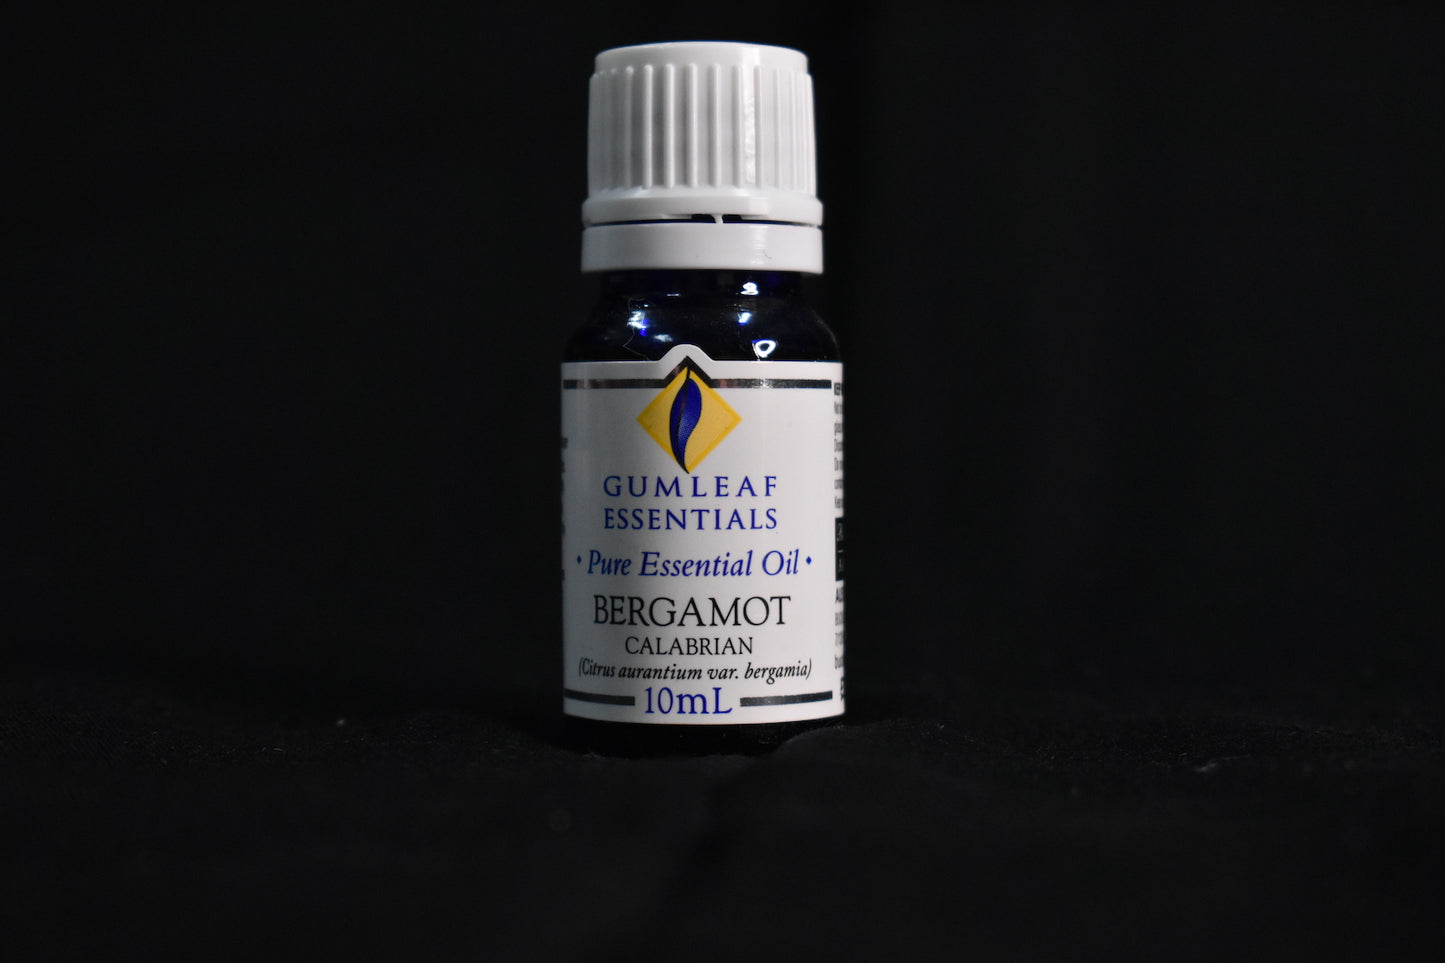 Gum Leaf Essentials Pure Essential Oil - Bergamont